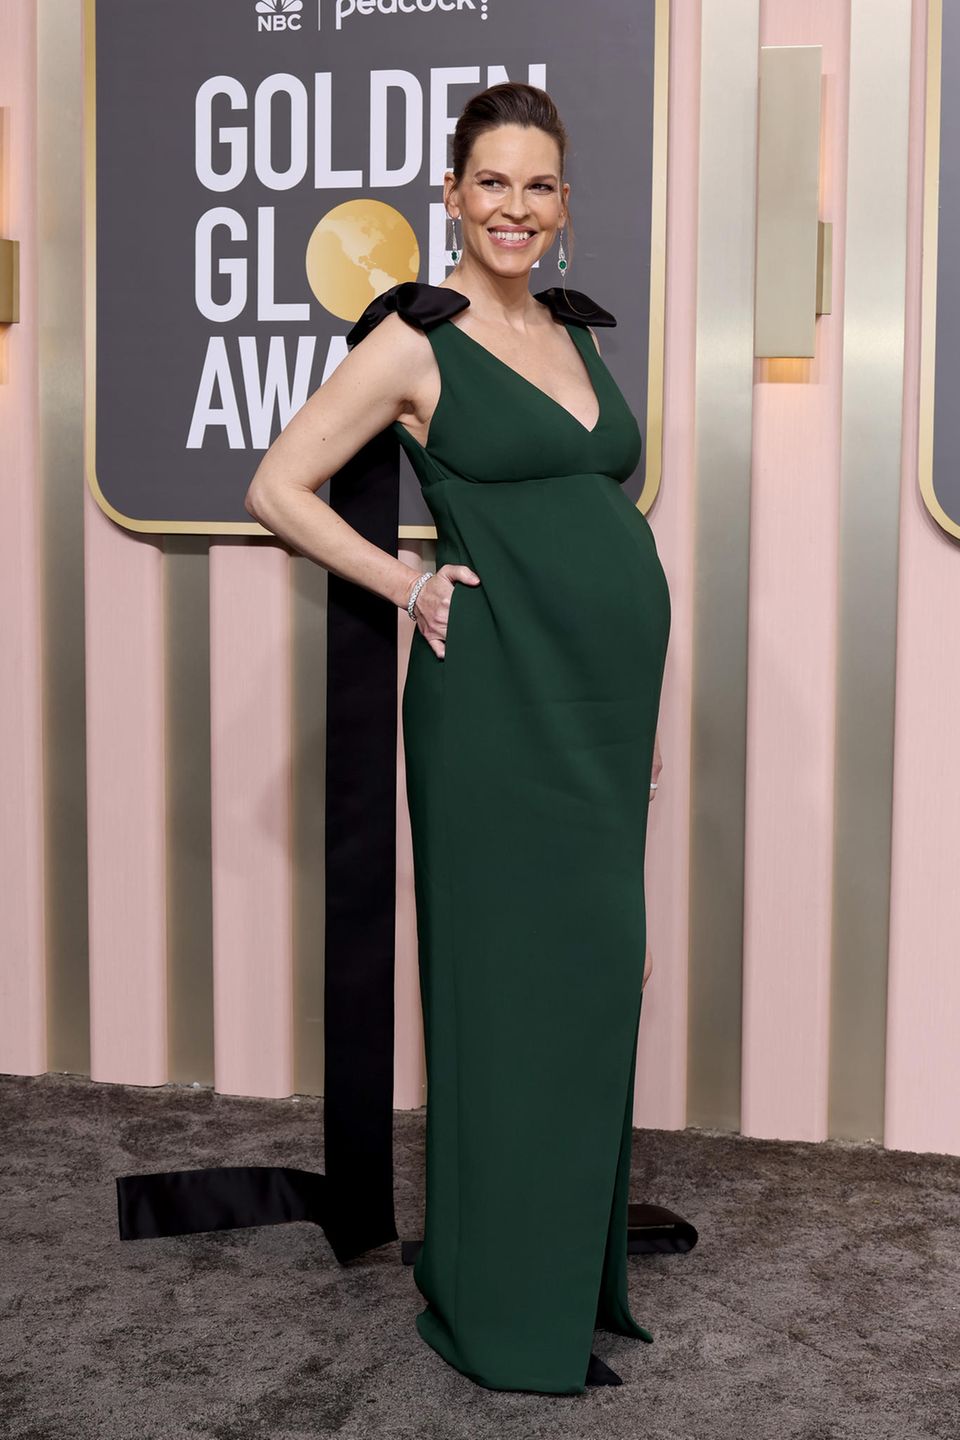 Hilary Swank erwartet ihr erstes Baby. Die Vorfreude auf den Familienzuwachs ist ihr ins Gesicht geschrieben. Im moosgrünen Kleid mit tiefem V-Ausschnitt setzt sie ihre Kugel bei den Golden Globe Awards stolz in Szene.